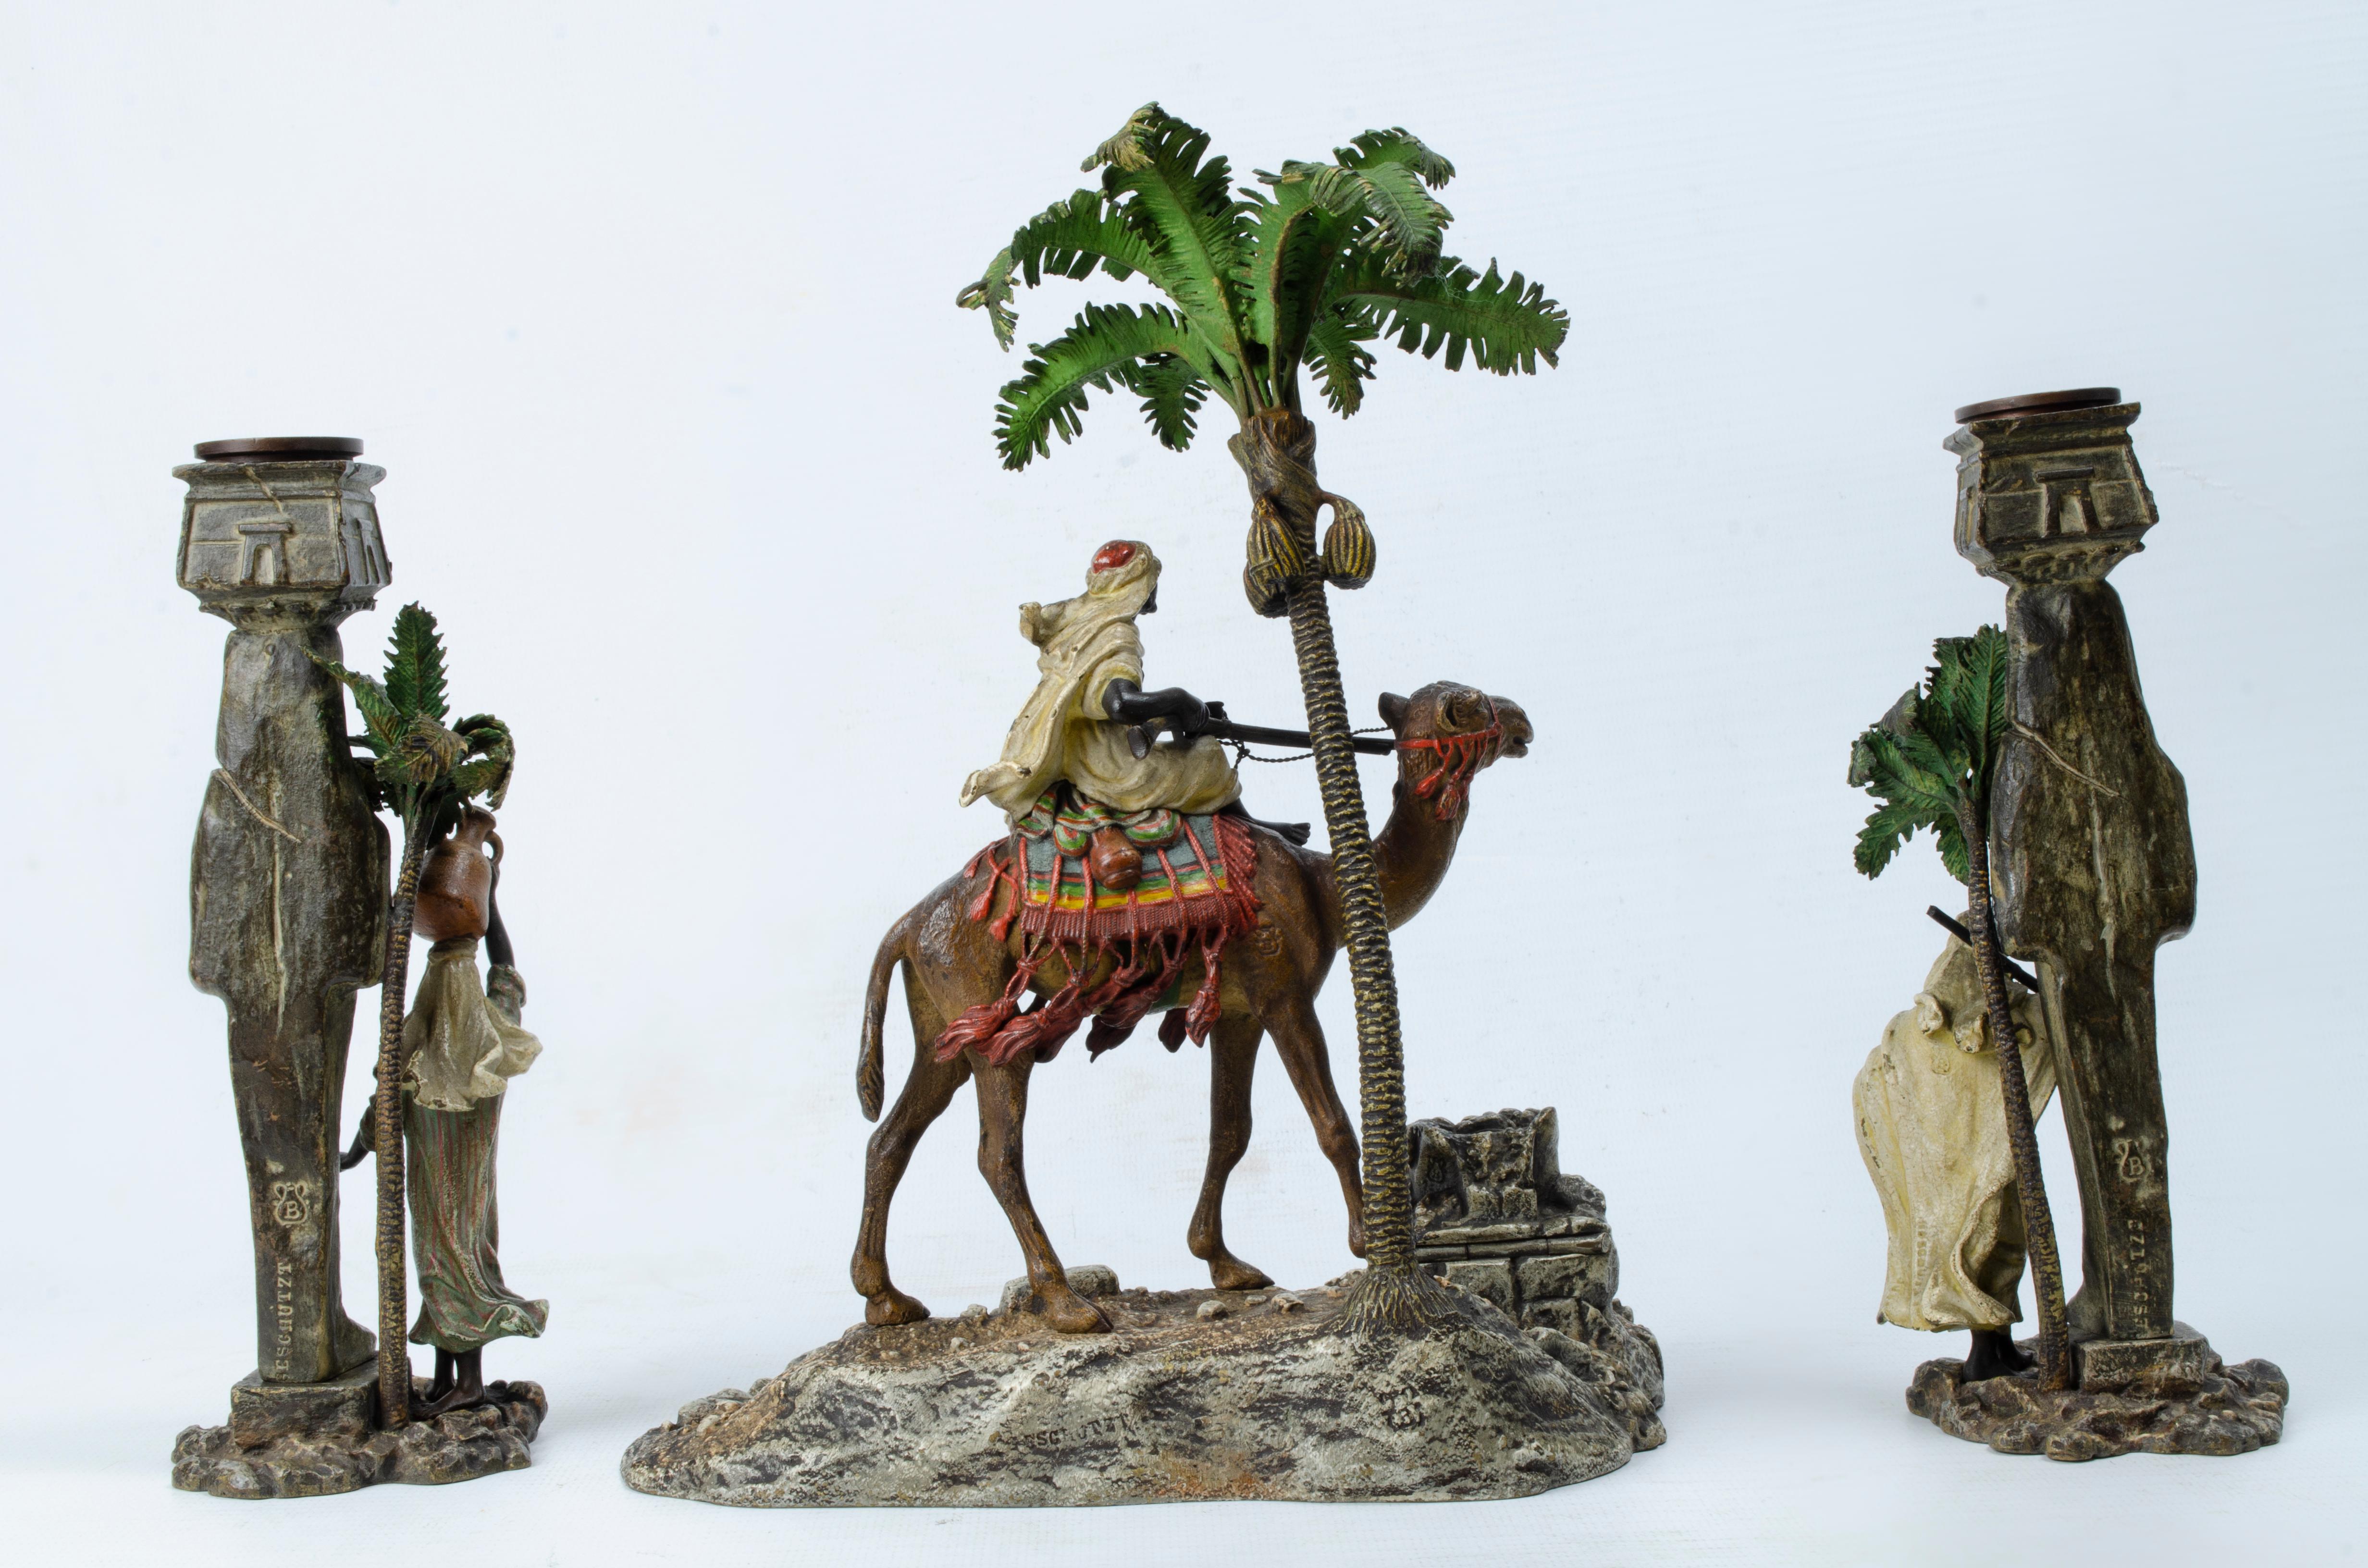 Garniture à thème arabe réalisée par Franz Xavier Bergman (1861-1936). Les pièces sont réalisées en bronze polychrome. La pièce centrale est un encrier caché parmi les rochers et un guerrier arabe chevauchant un chameau à côté d'un magnifique